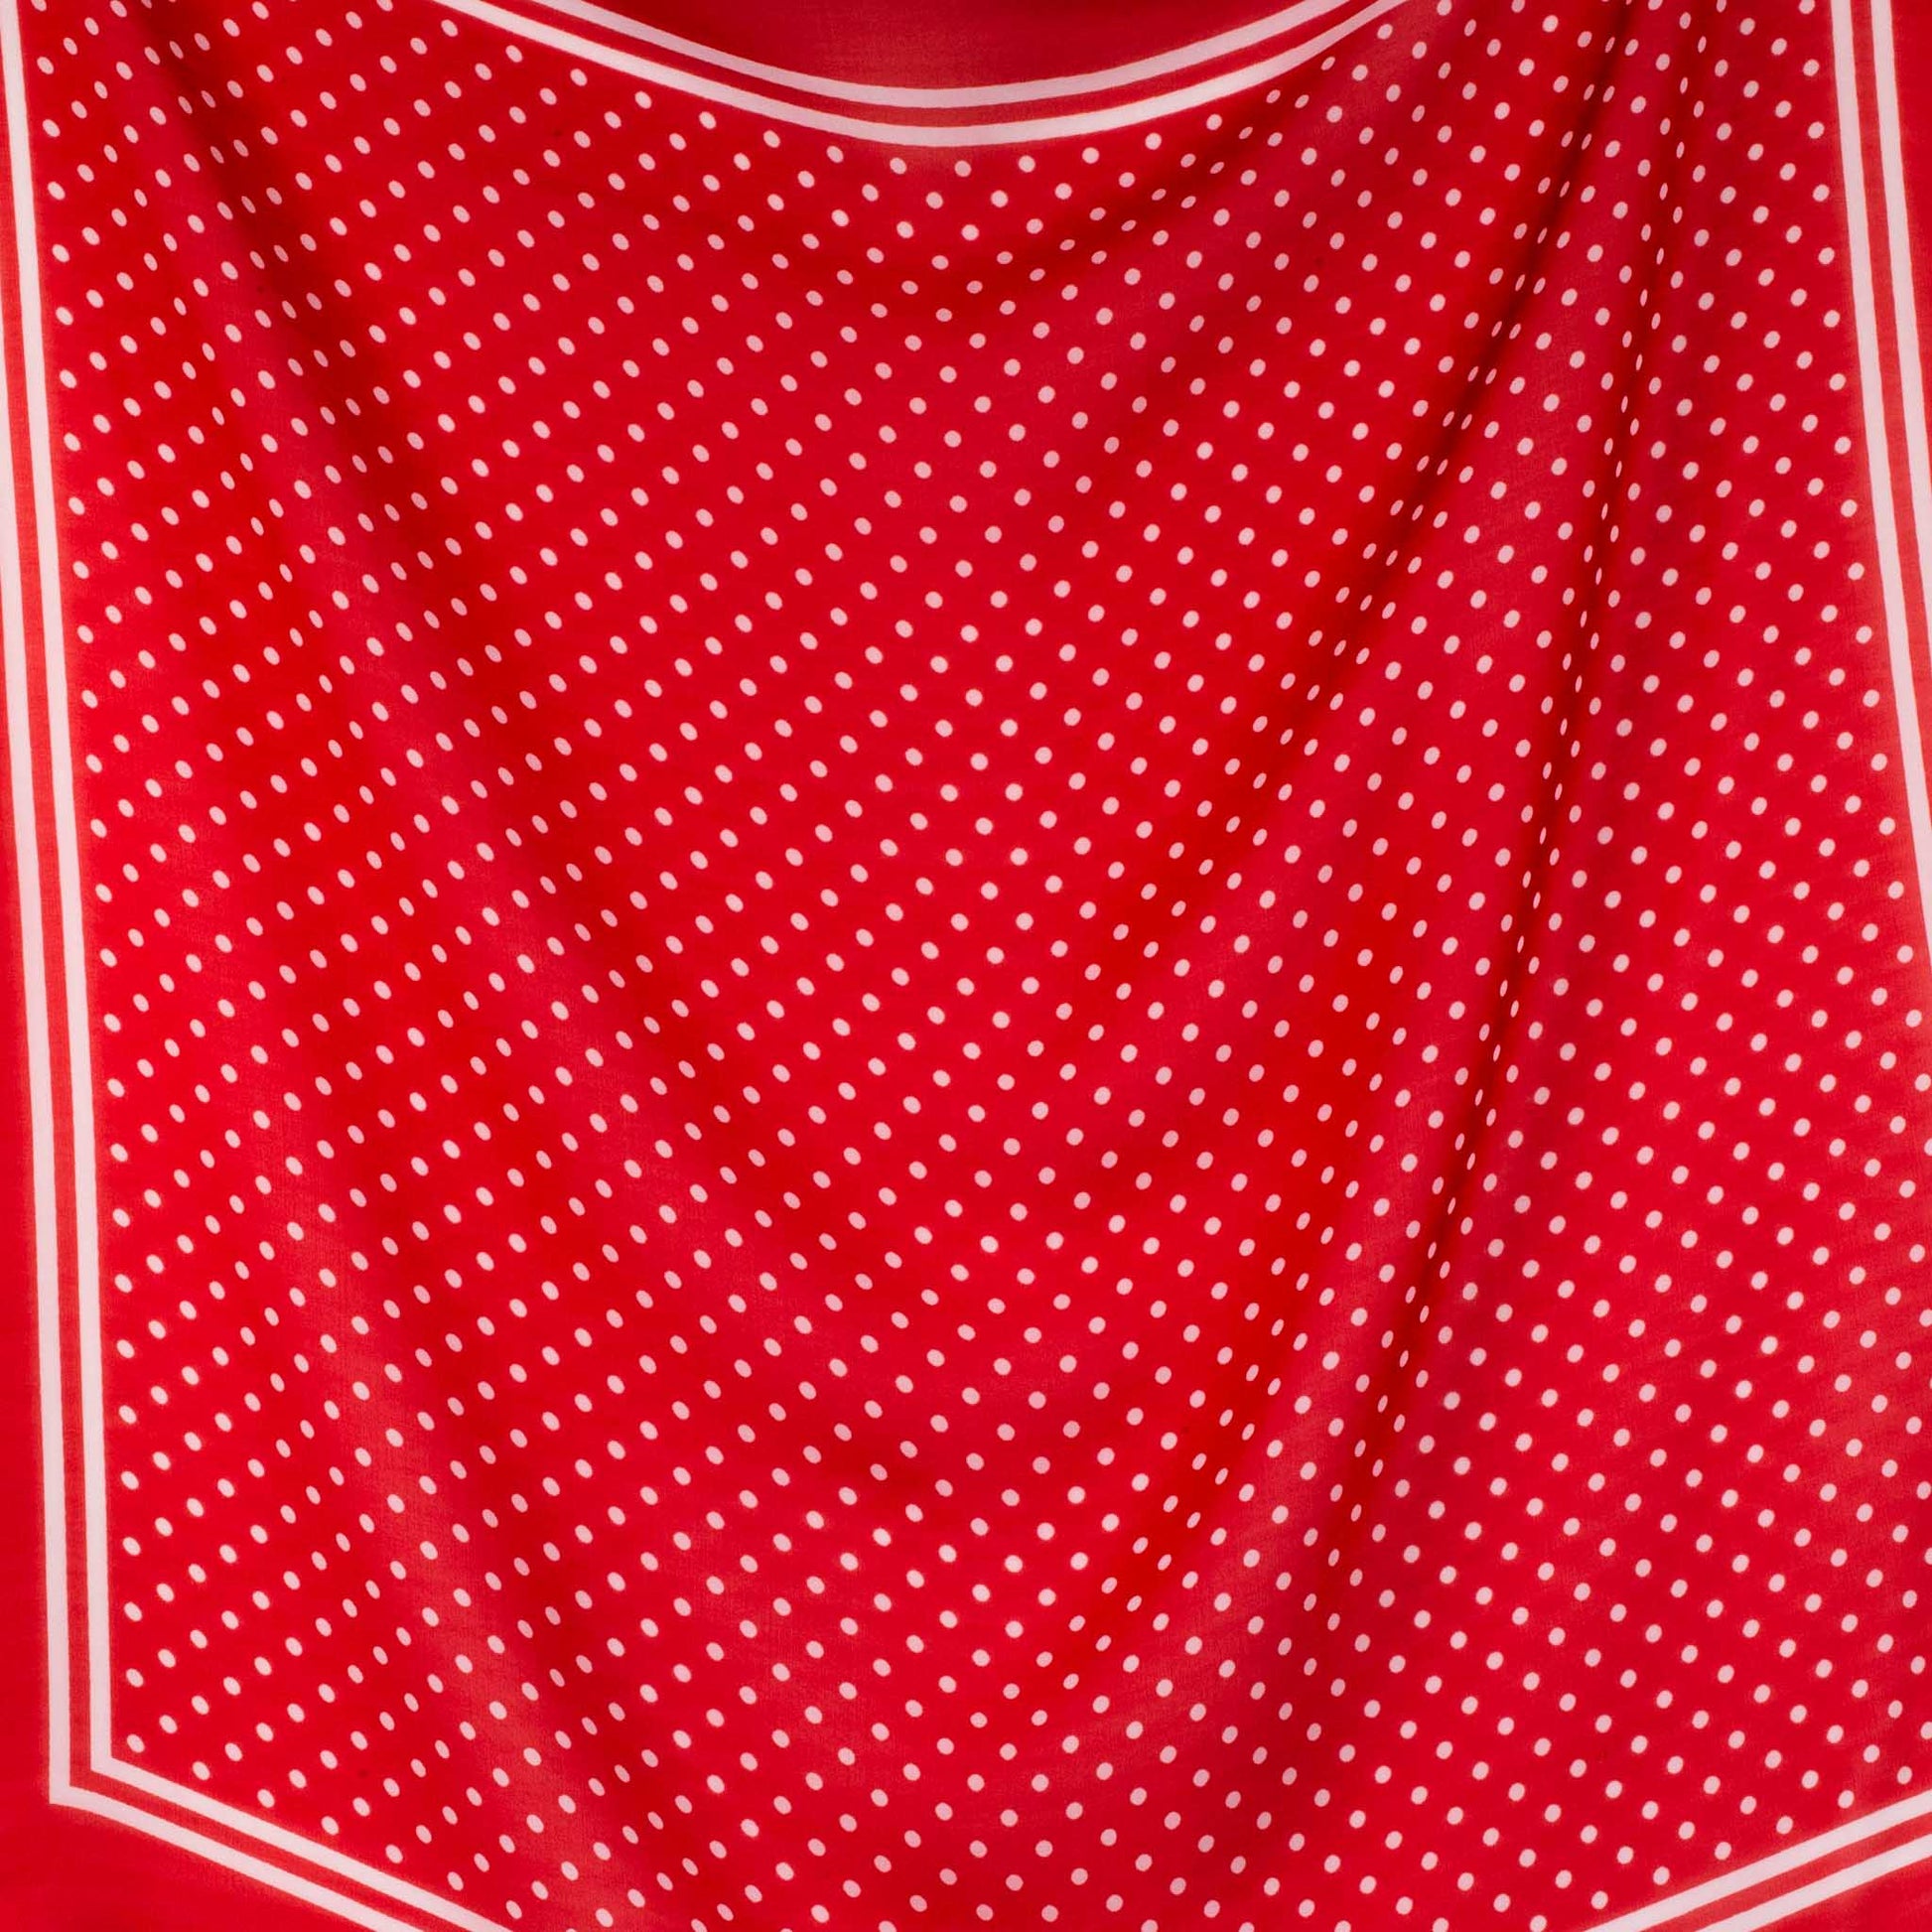 Eșarfă damă din mătase , imprimeu cu buline și dungi, 65 x 65 cm - Roșu